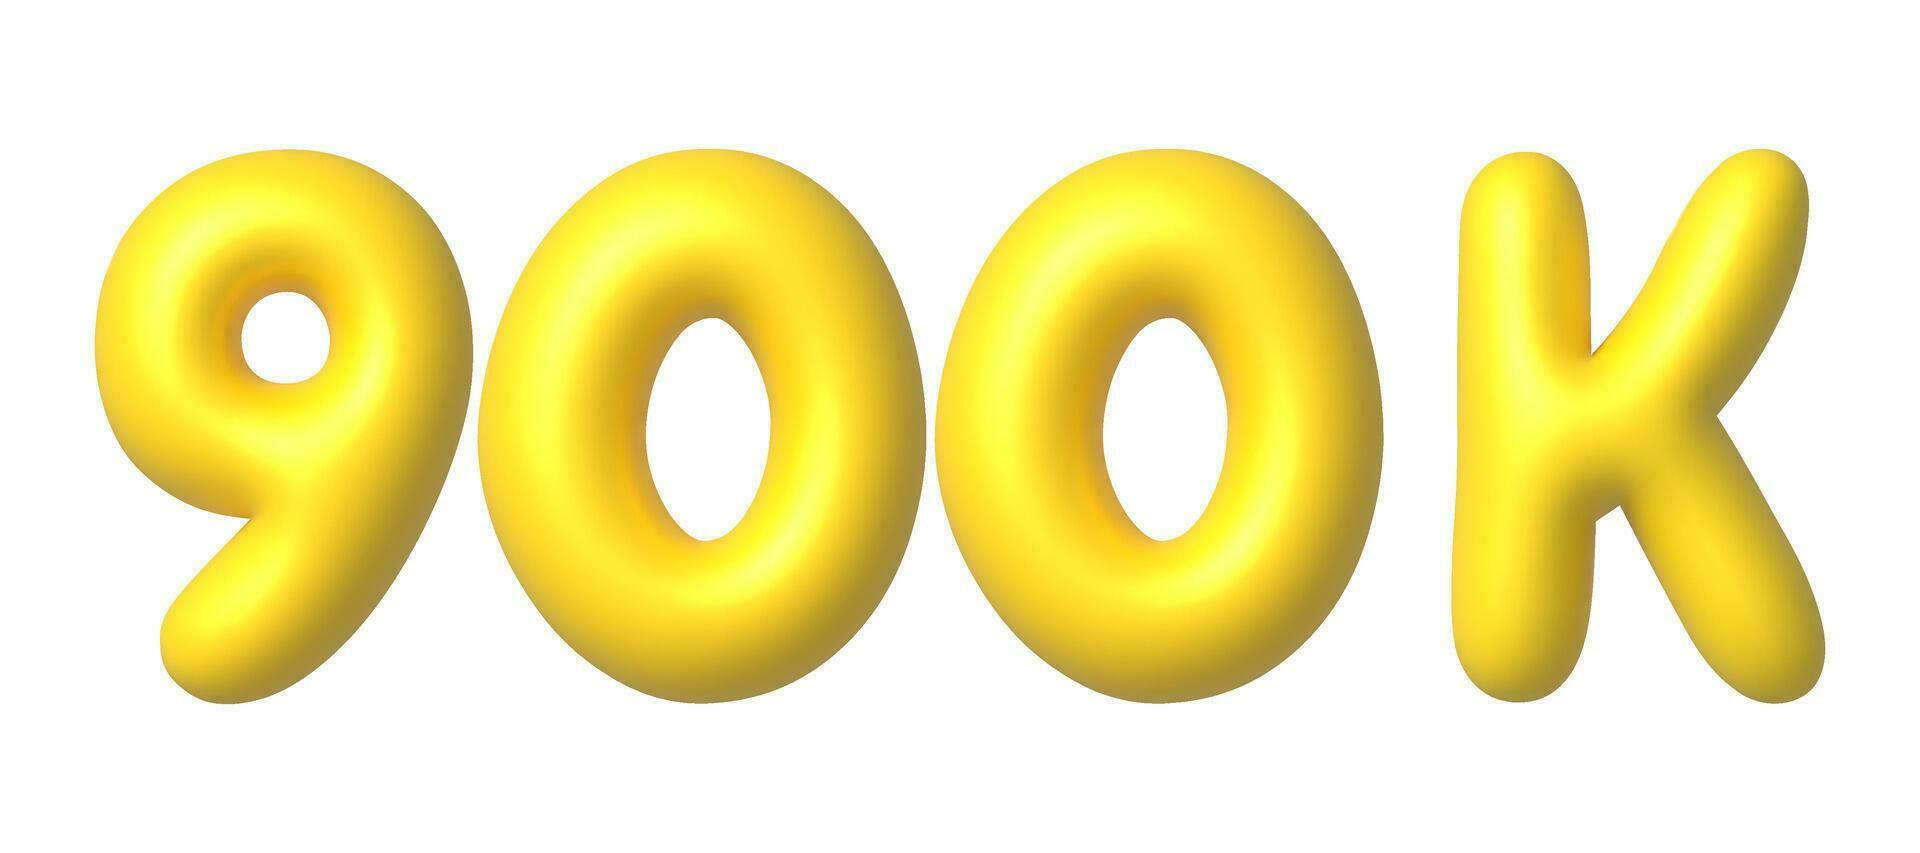 900k, 900.000 seguidores en social medios de comunicación. 3d oro vector diseño elemento en dibujos animados estilo.